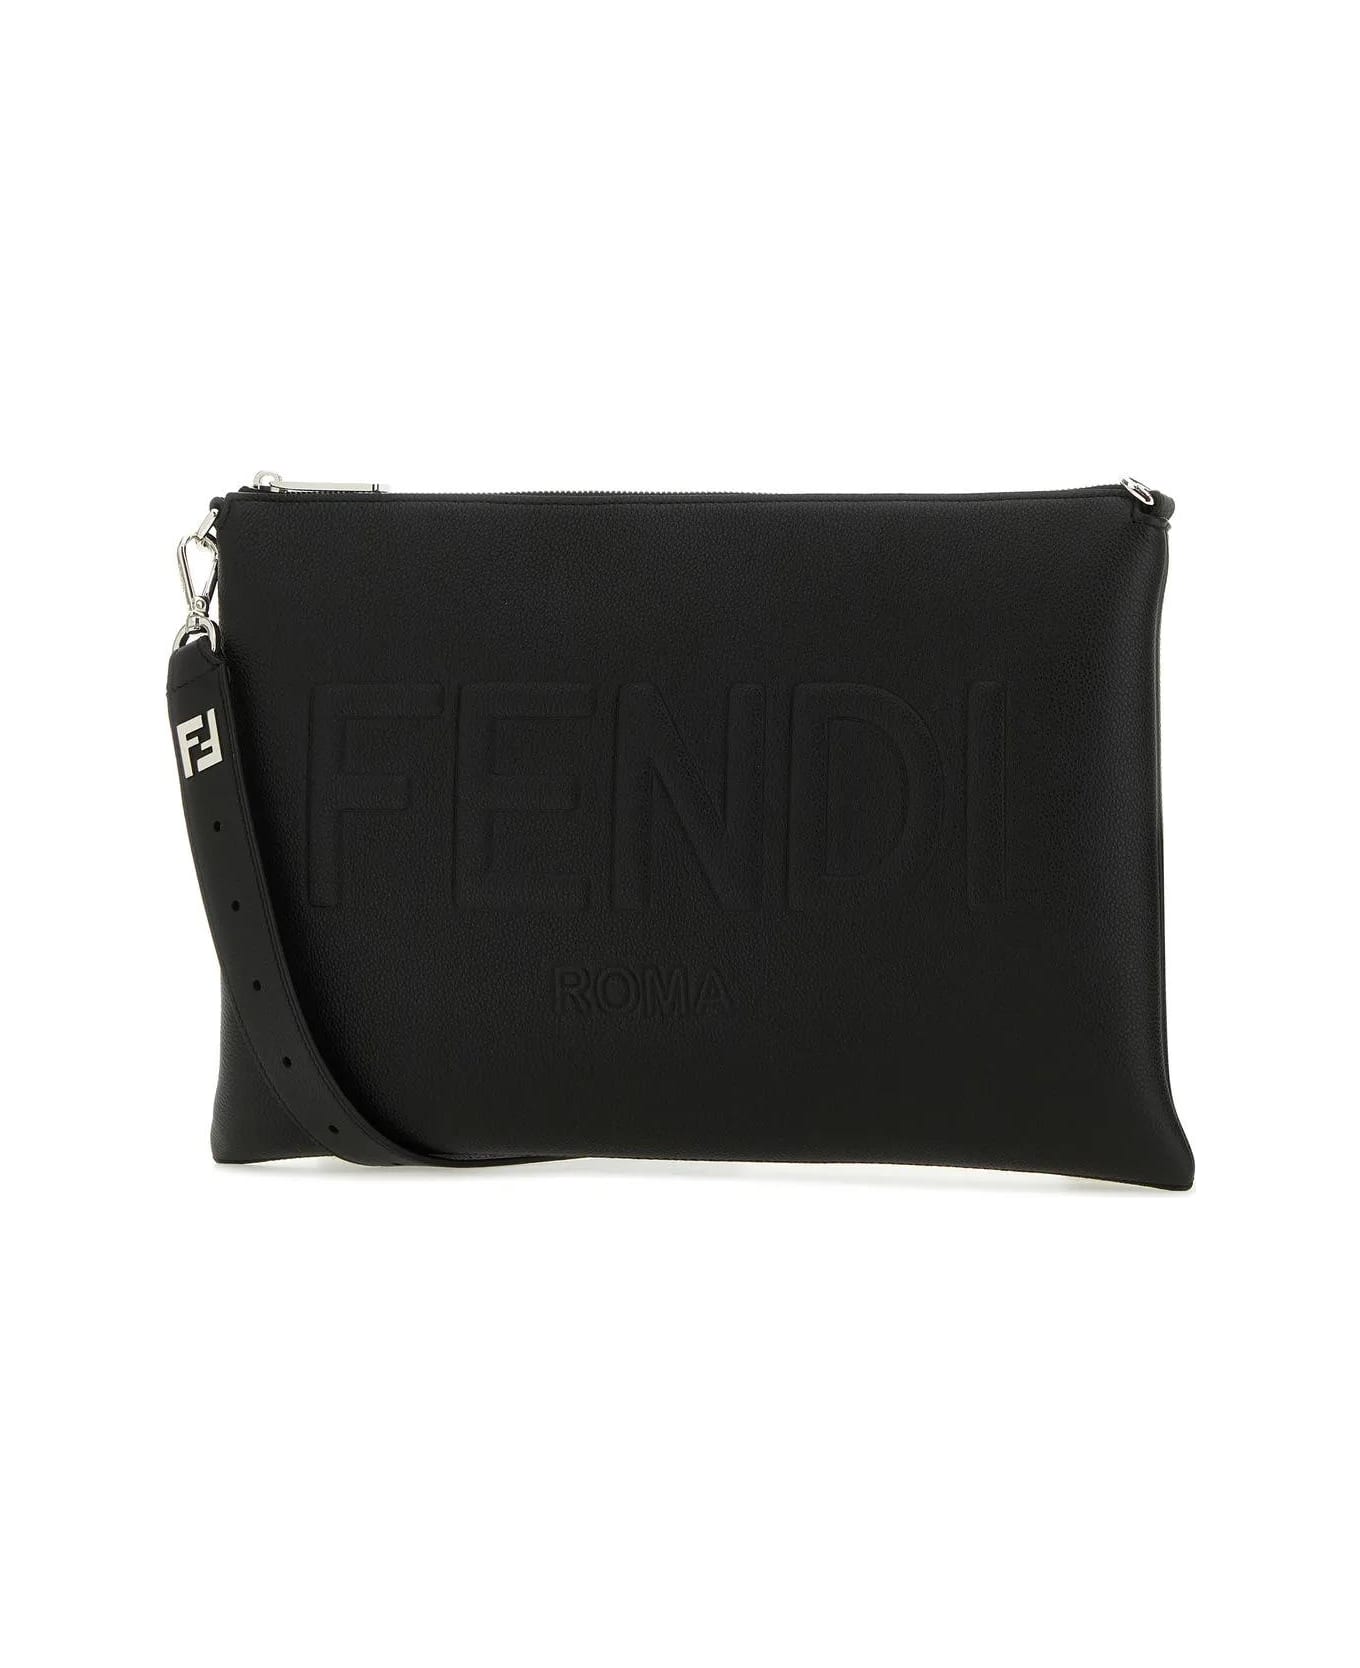 Fendi Black Leather Fendi Roma Shoulder Bag - Black